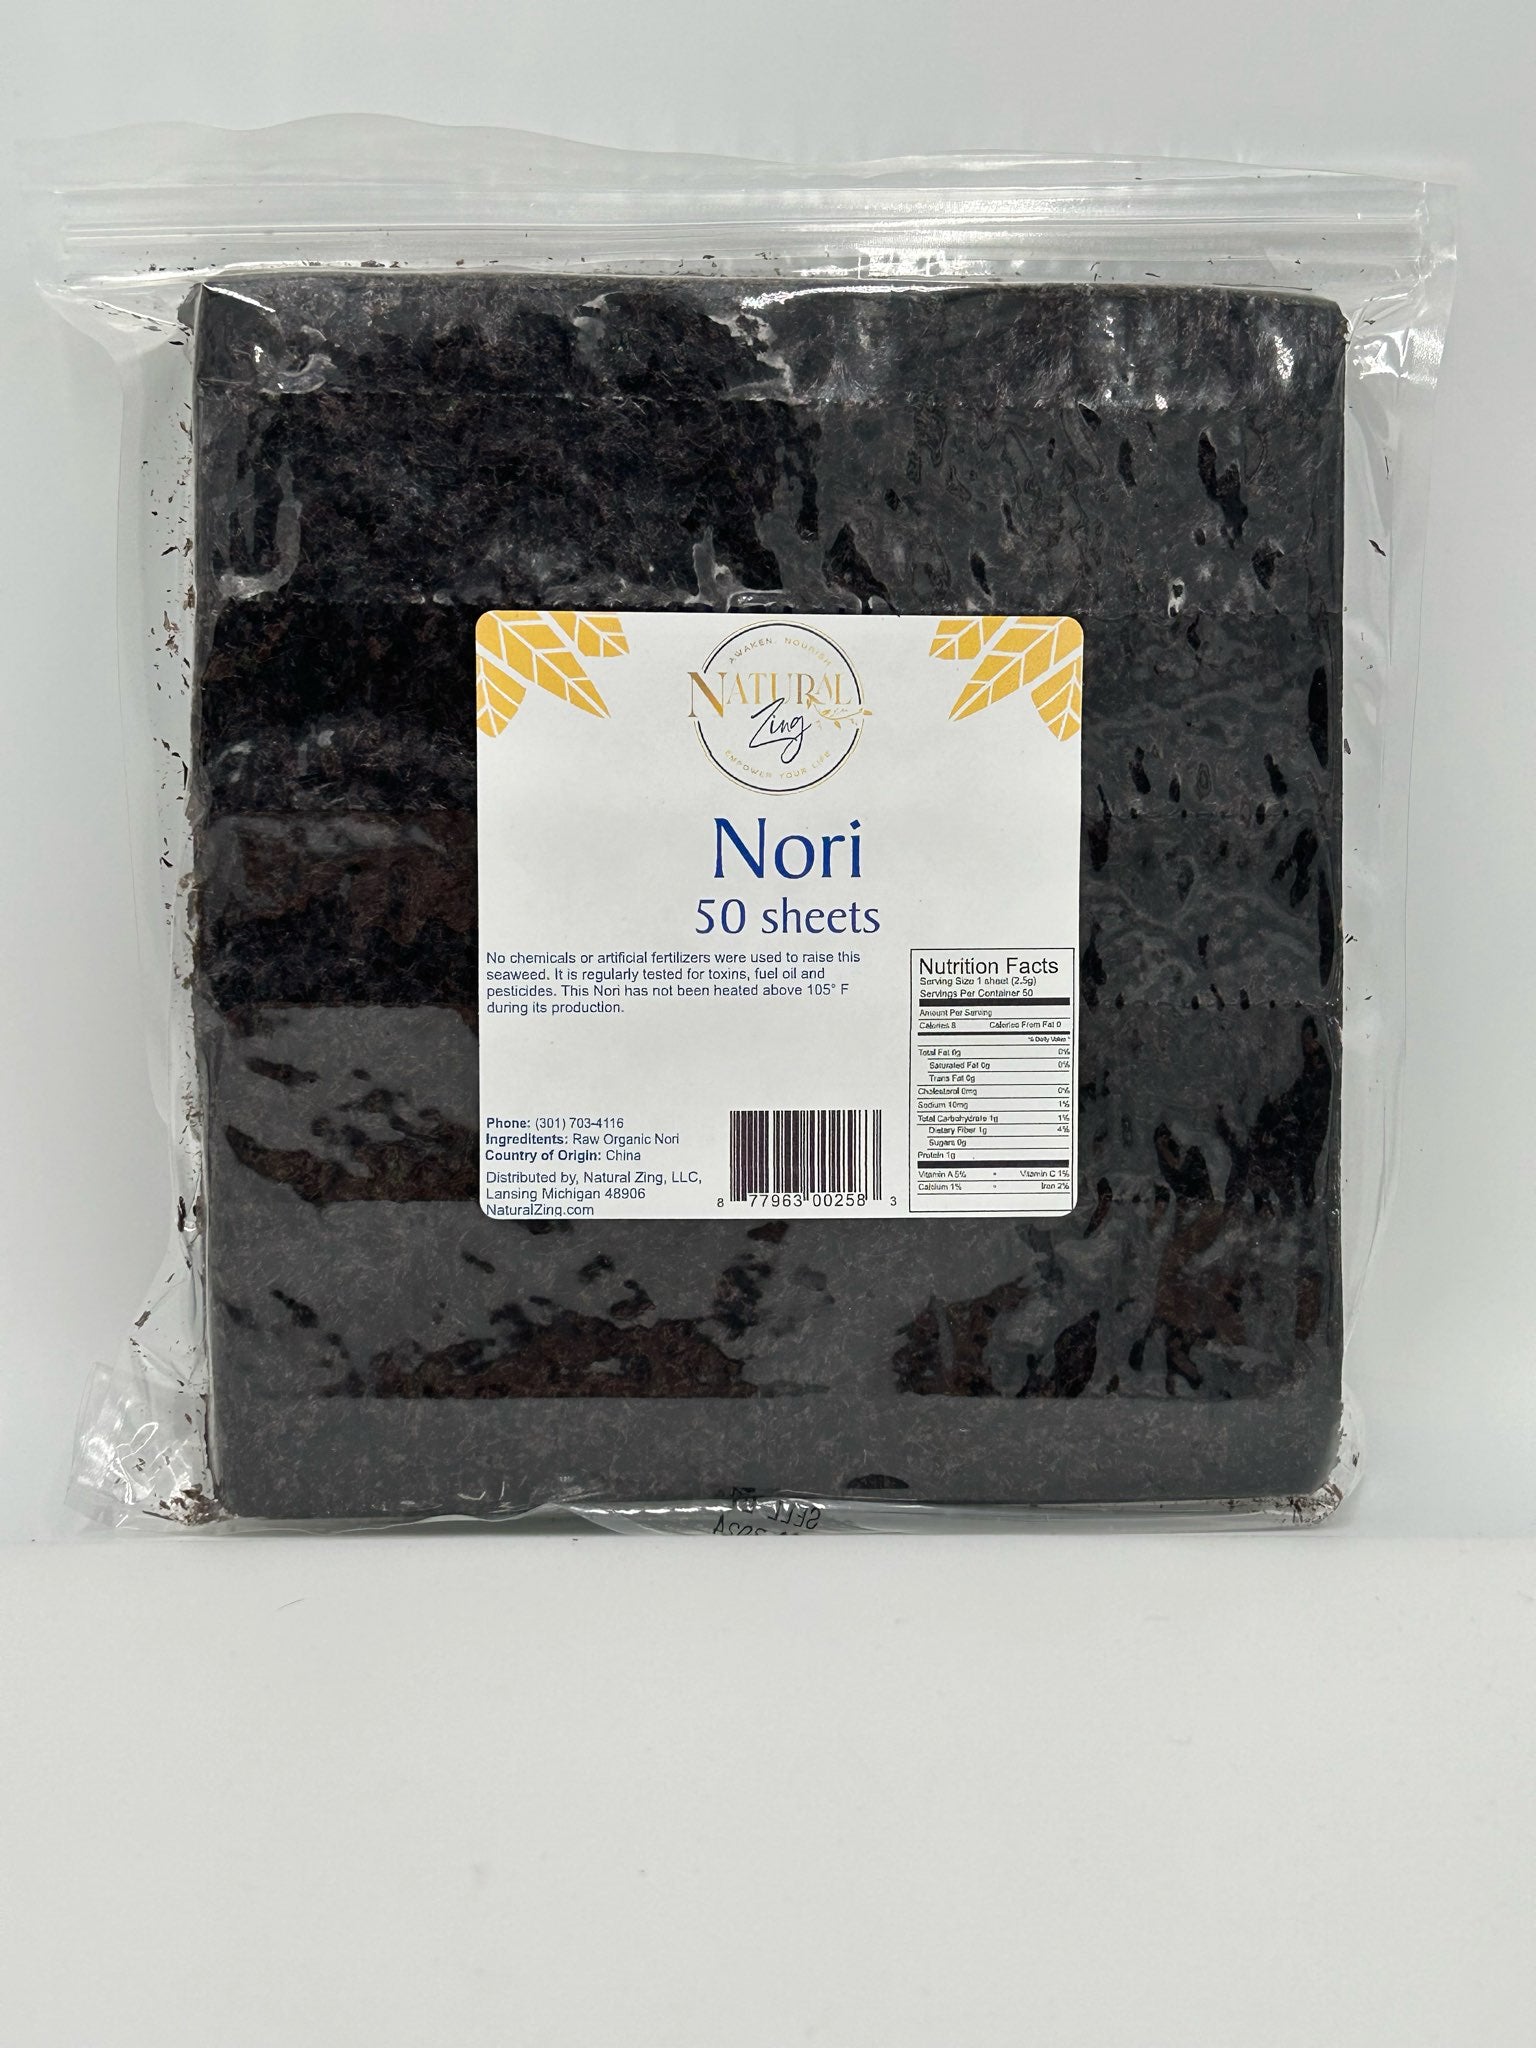 Nori, Natural Zing 10 sheets/pk - Natural Zing